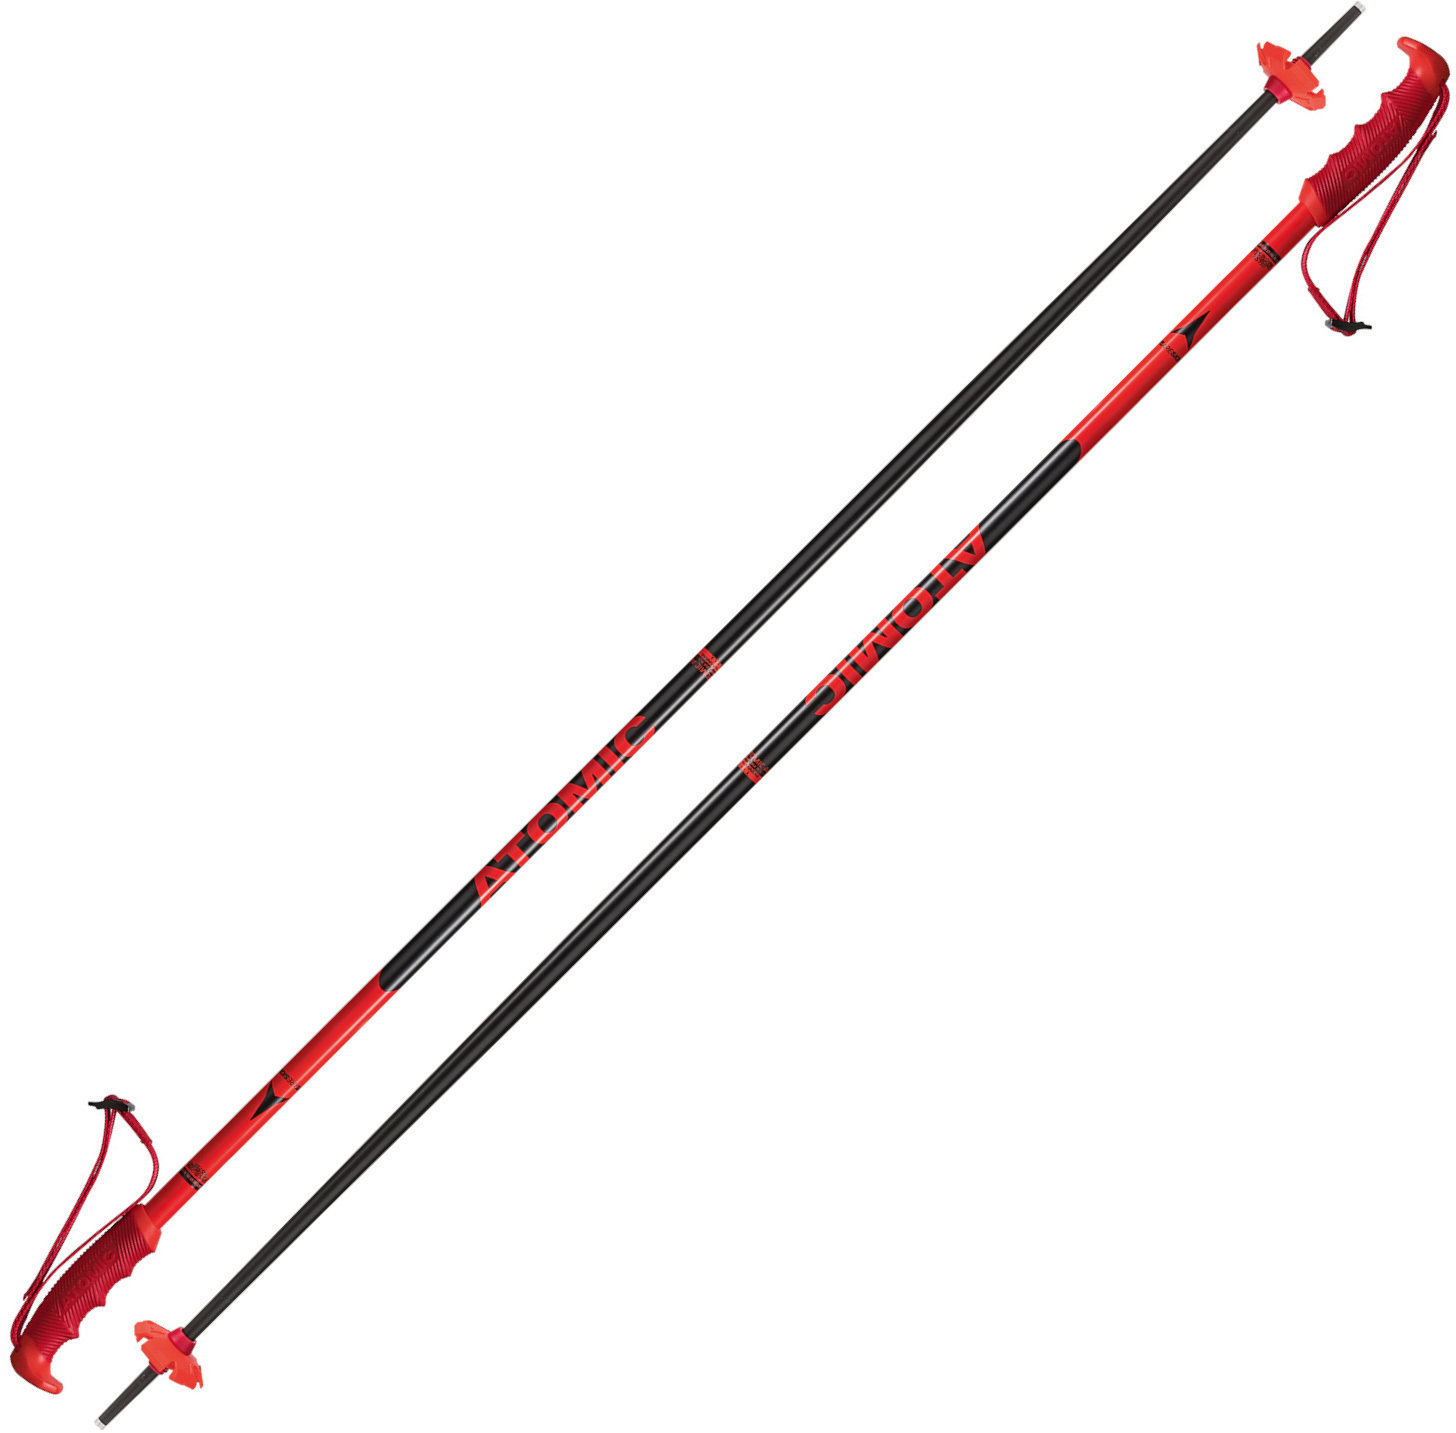 Ski-stokken Atomic Redster Red/Black 120 cm Ski-stokken